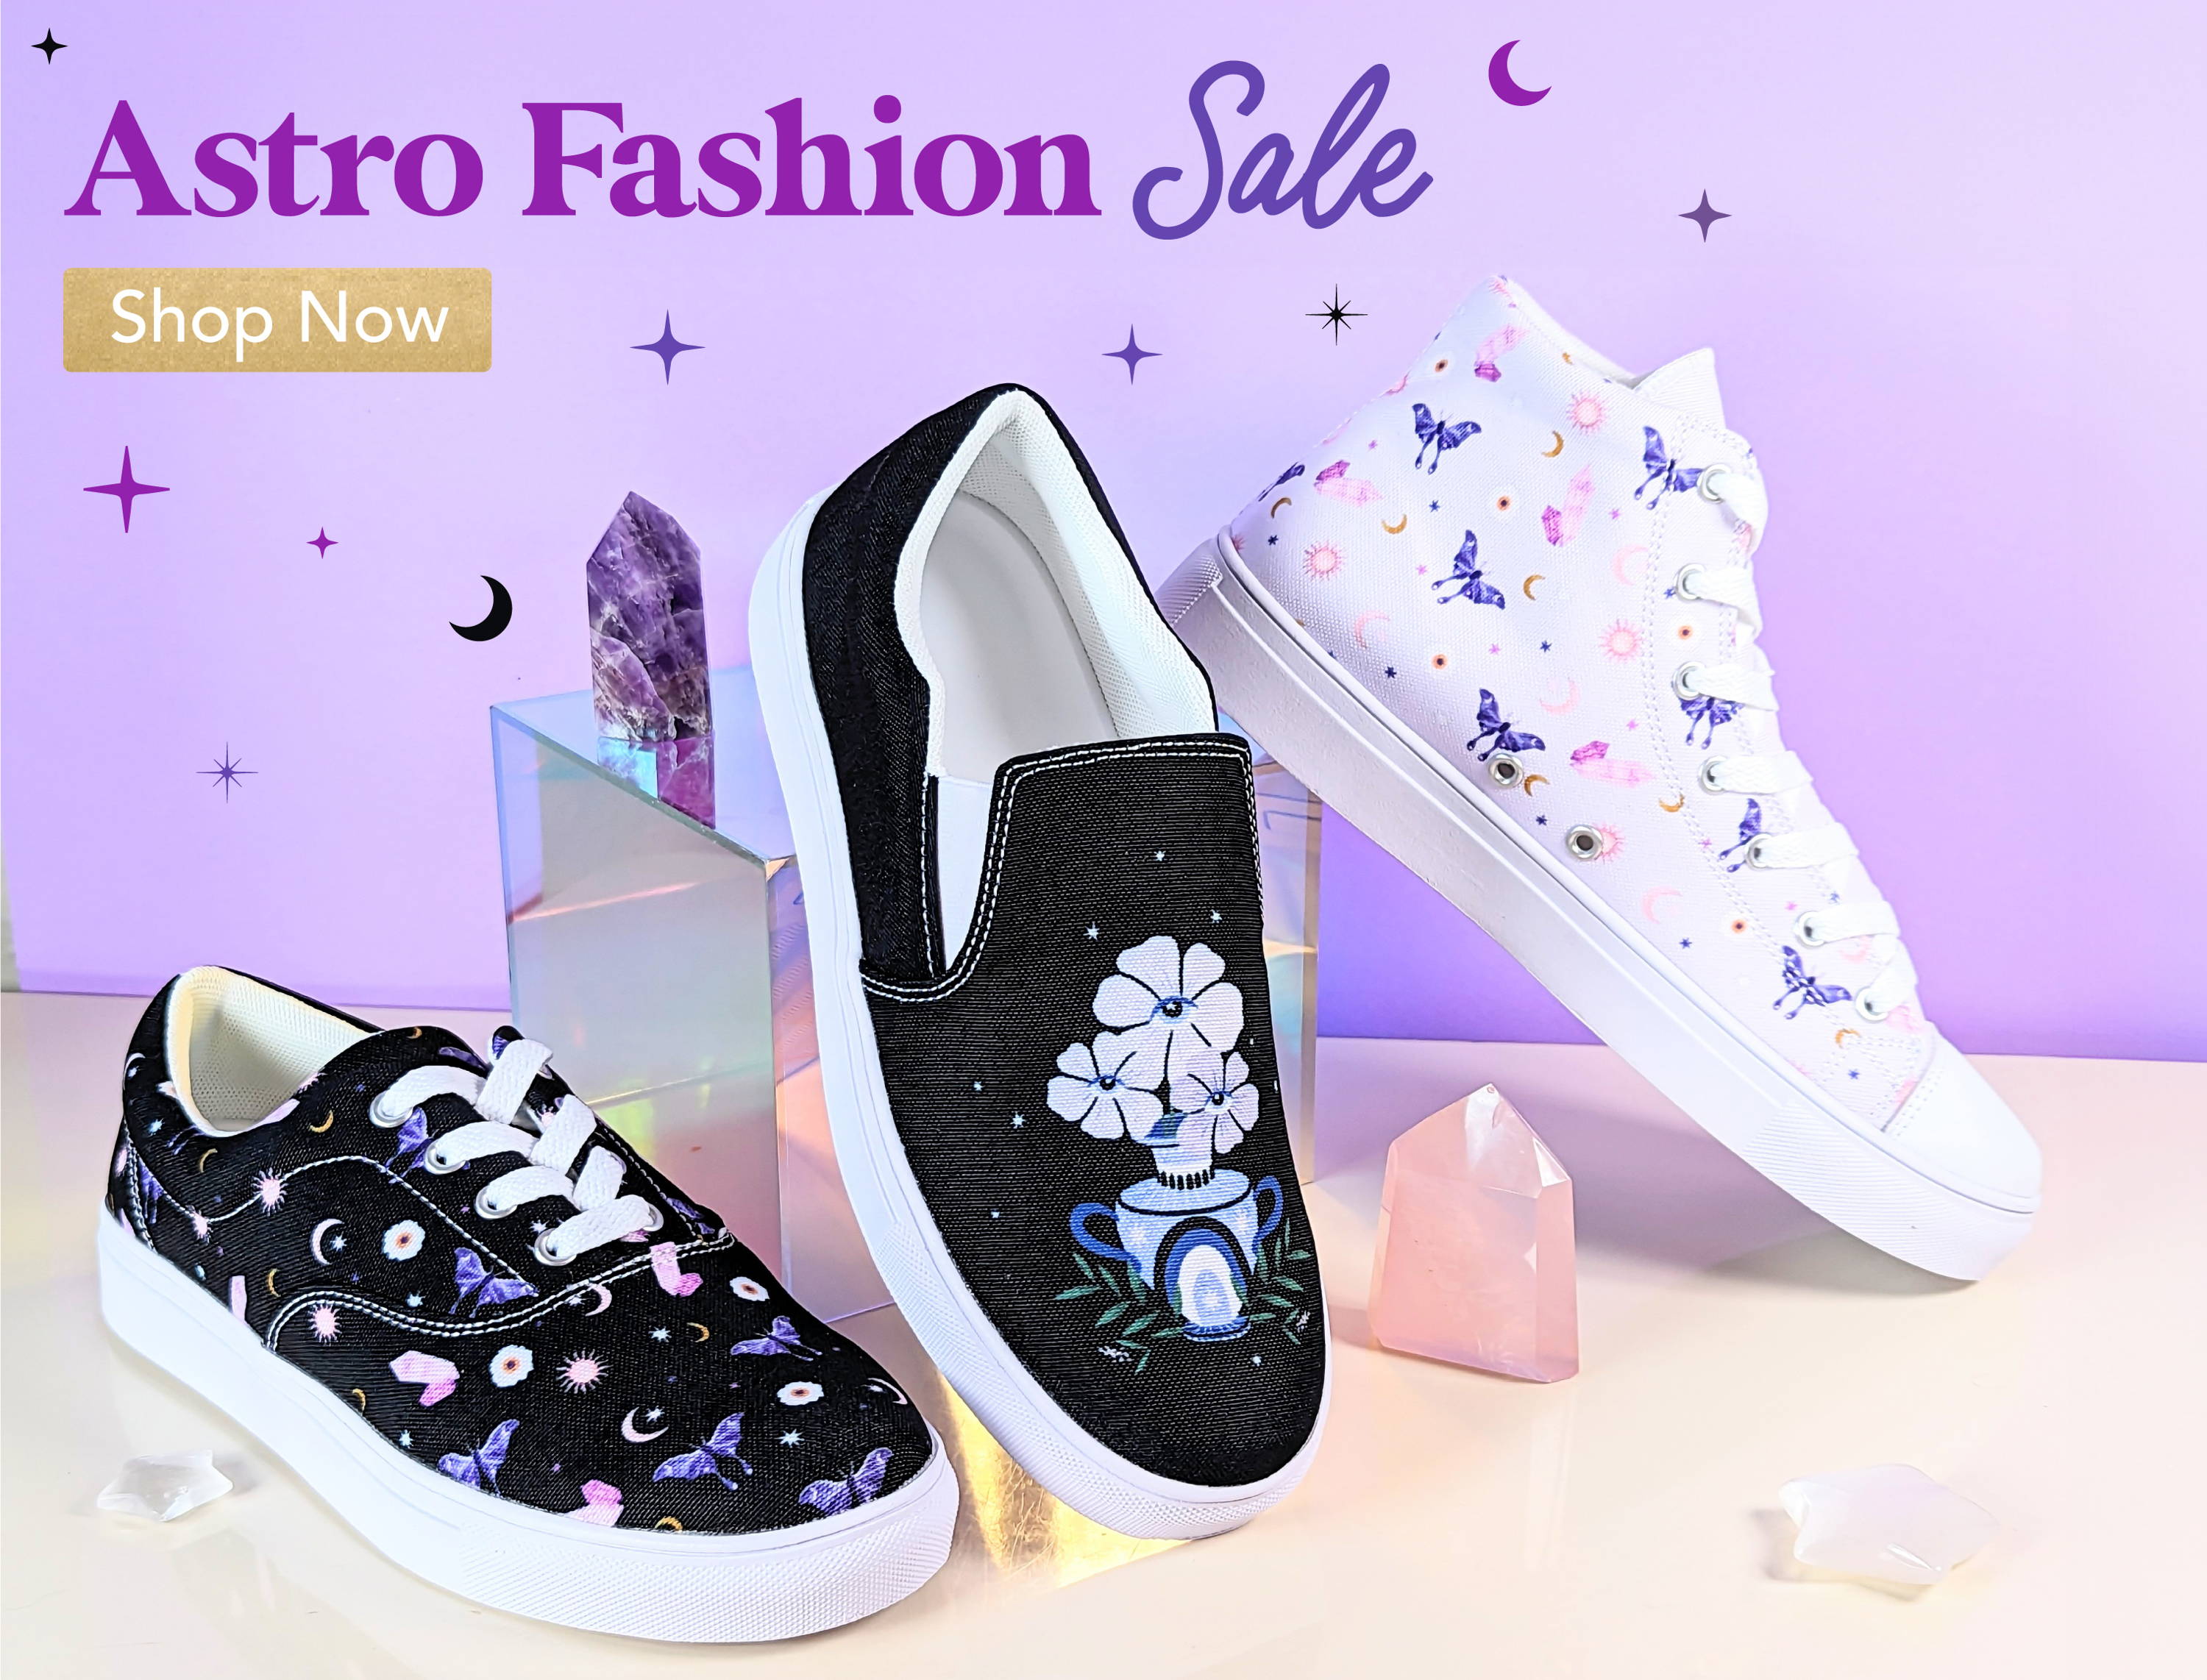 Astro Fashion Sale